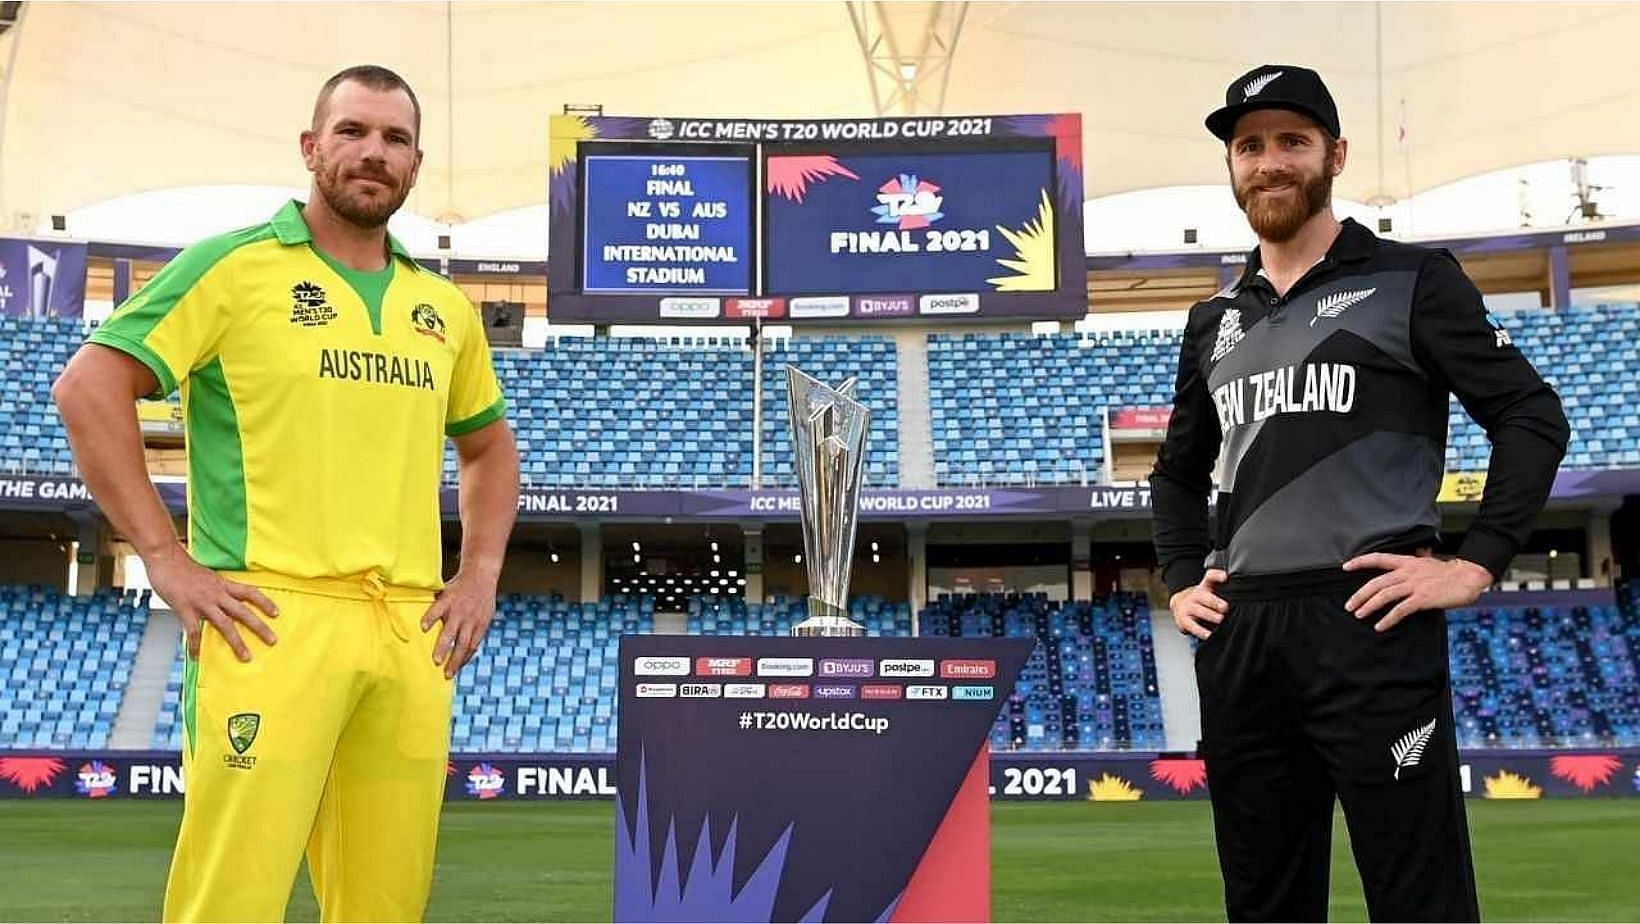 ऑस्ट्रेलिया और न्यूजीलैंड के बीच टी20 वर्ल्ड कप का फाइनल मुकाबला खेला जाएगा